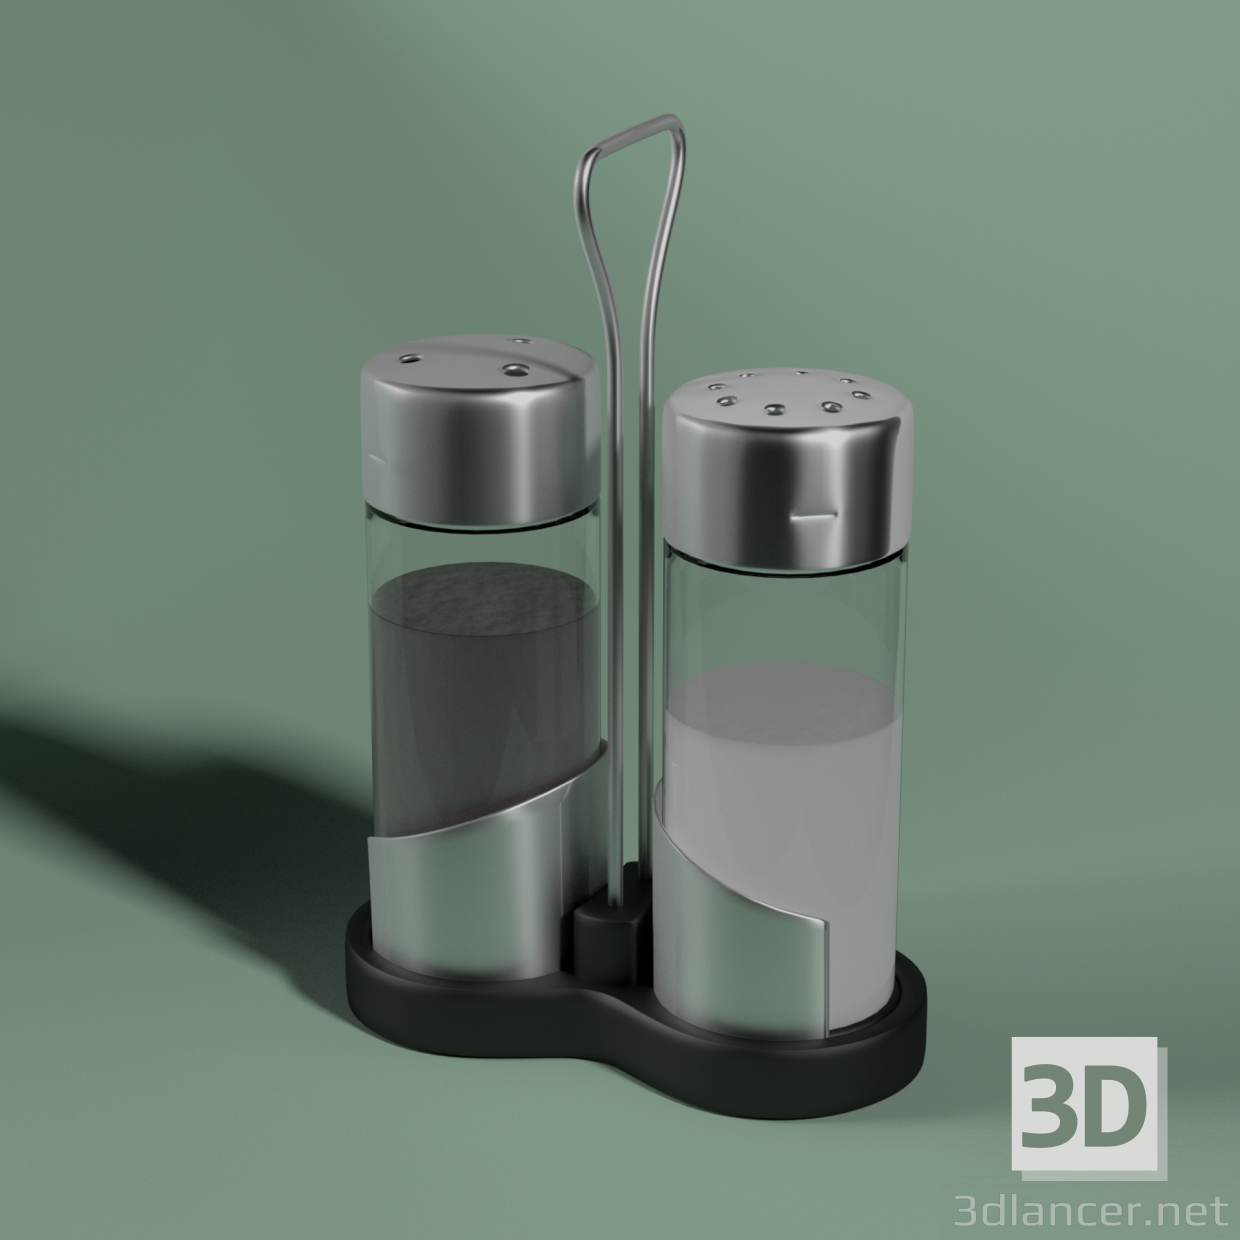 3D Tuzluk modeli satın - render